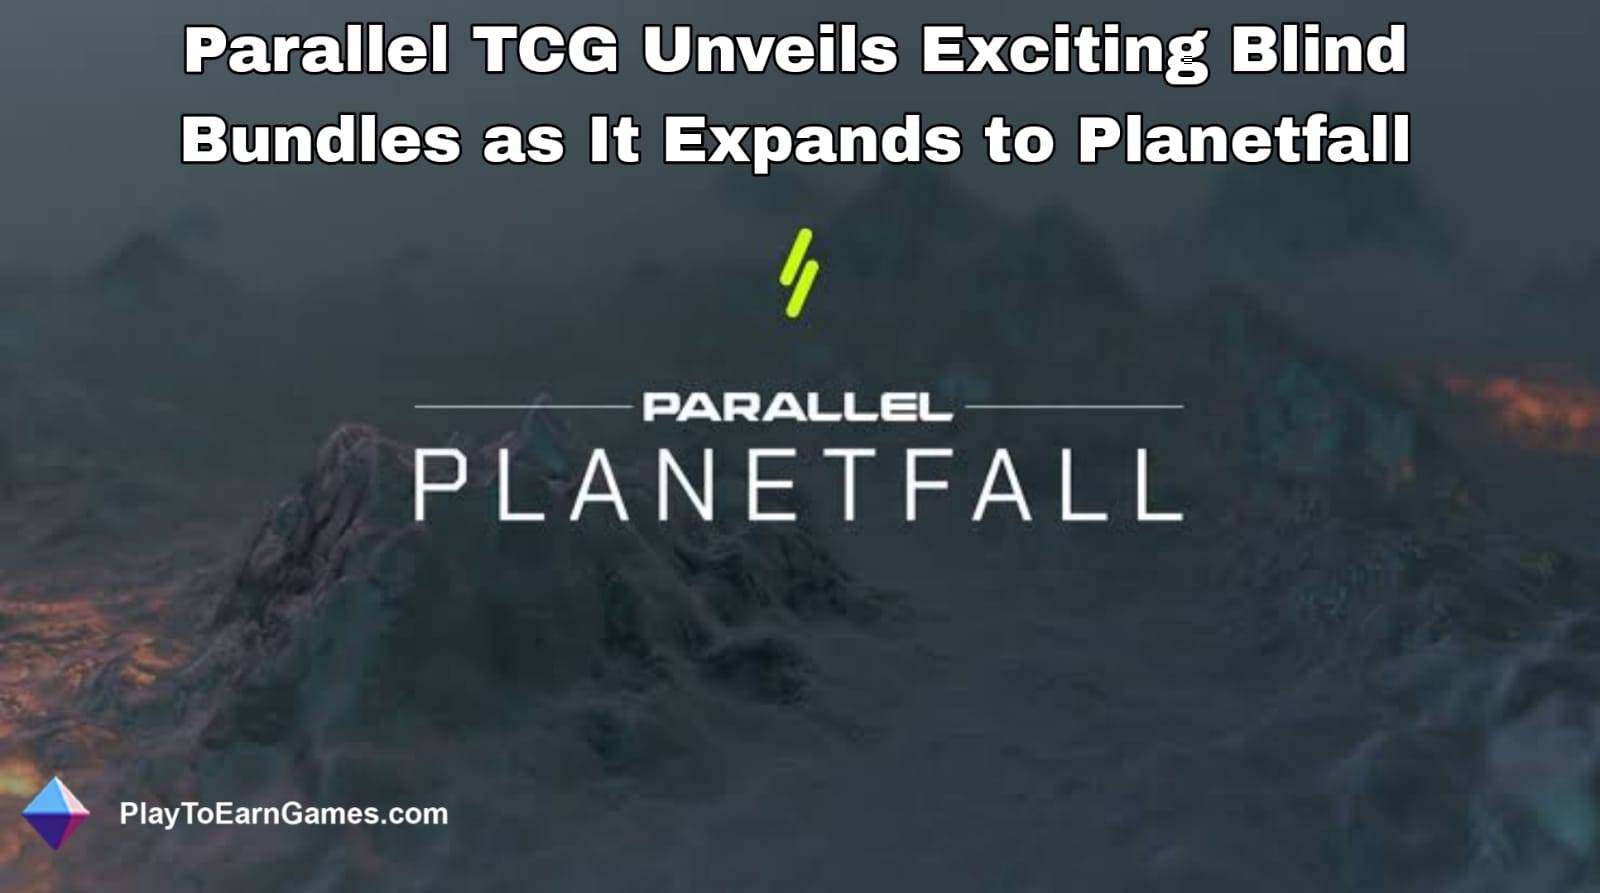 पैरेलल टीसीजी ने प्लेनेटफॉल तक विस्तार करते हुए रोमांचक ब्लाइंड बंडलों का अनावरण किया